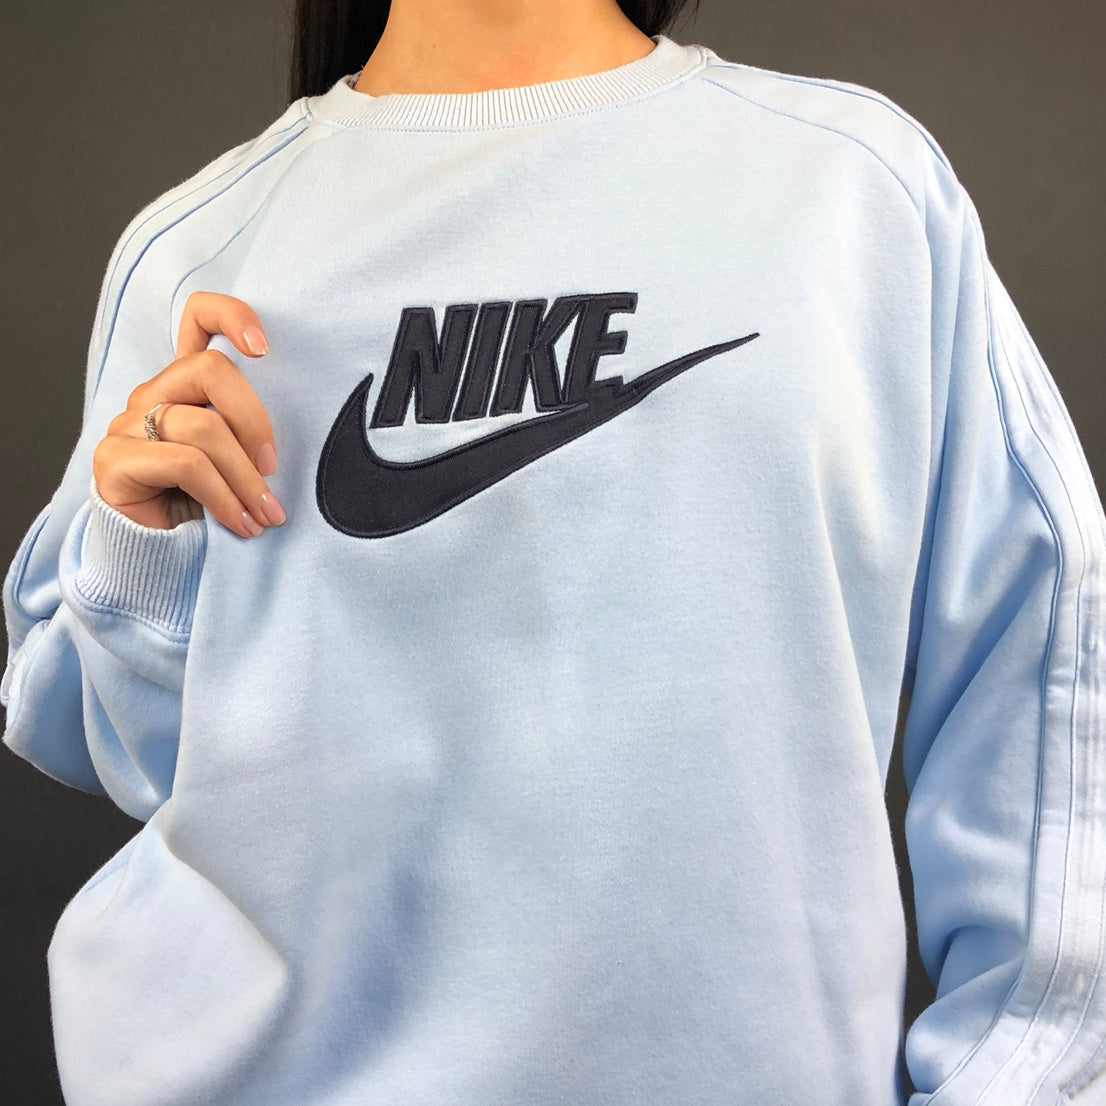 Vintage Nike Spellout Sweatshirt in Baby Blue